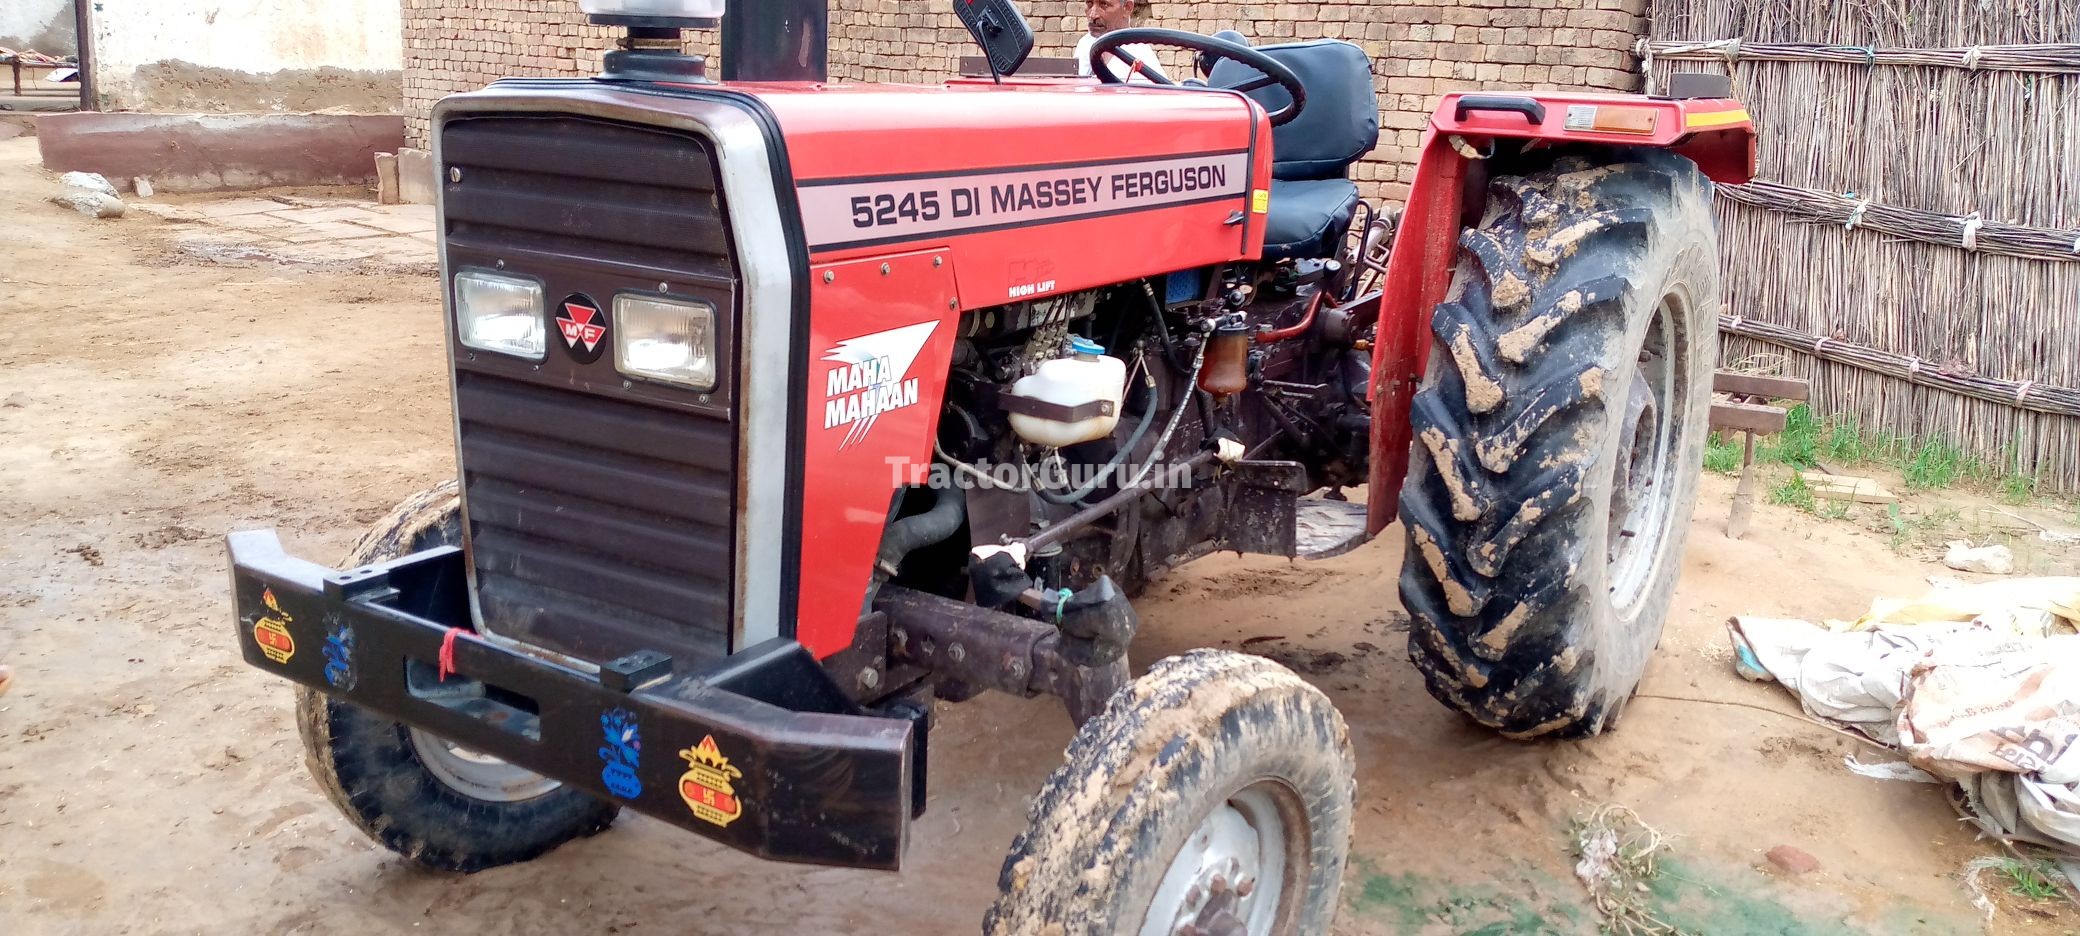 Get Second Hand Massey Ferguson 5245 DI MAHA MAHAAN Tractor in Good ...